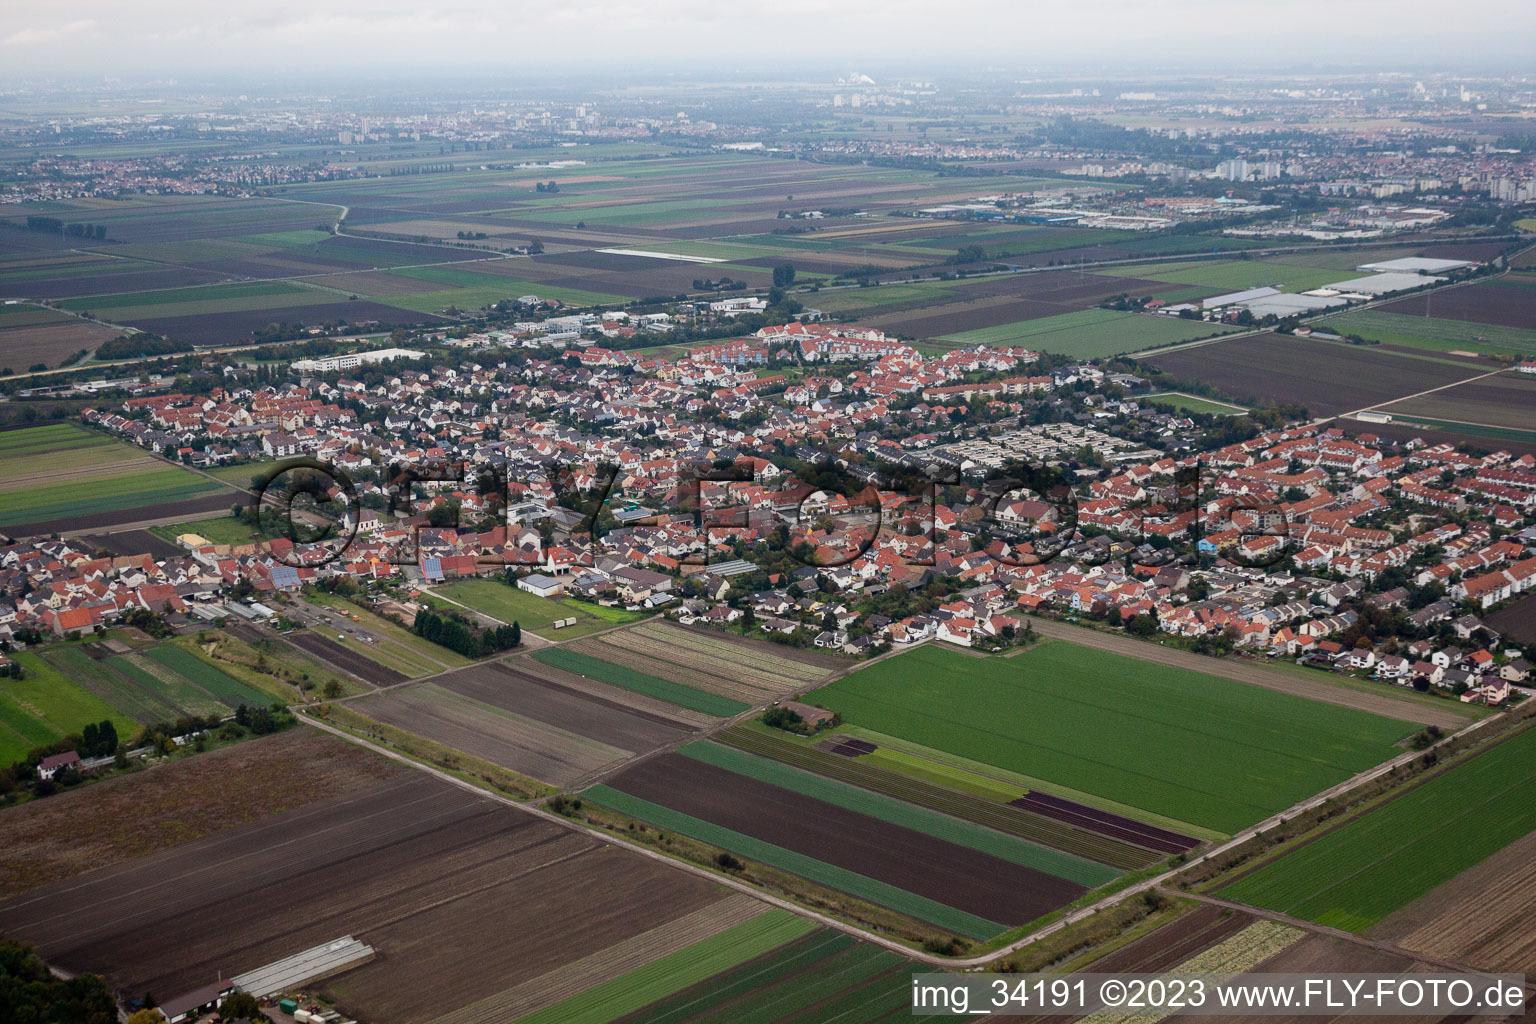 Luftbild von Ortsteil Ruchheim in Ludwigshafen am Rhein im Bundesland Rheinland-Pfalz, Deutschland